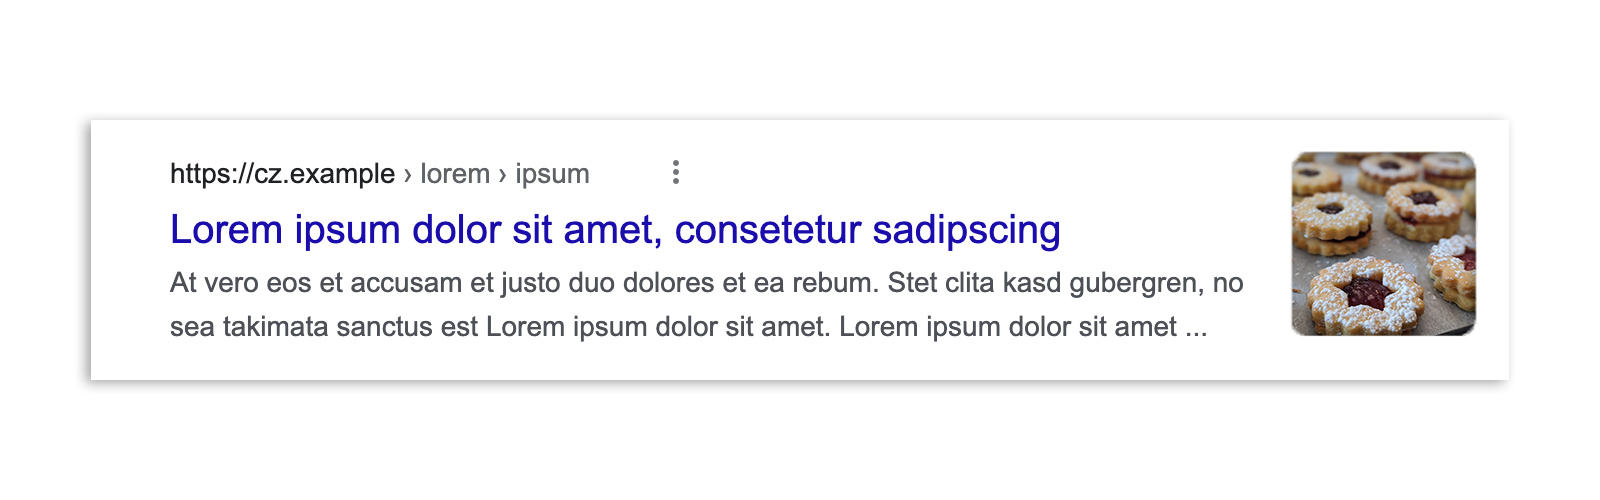 Un risultato della Ricerca Google in Repubblica Ceca prima dell'attuazione della legge, che mostra uno snippet dell'articolo, un'anteprima dell'immagine, il titolo e l'URL.